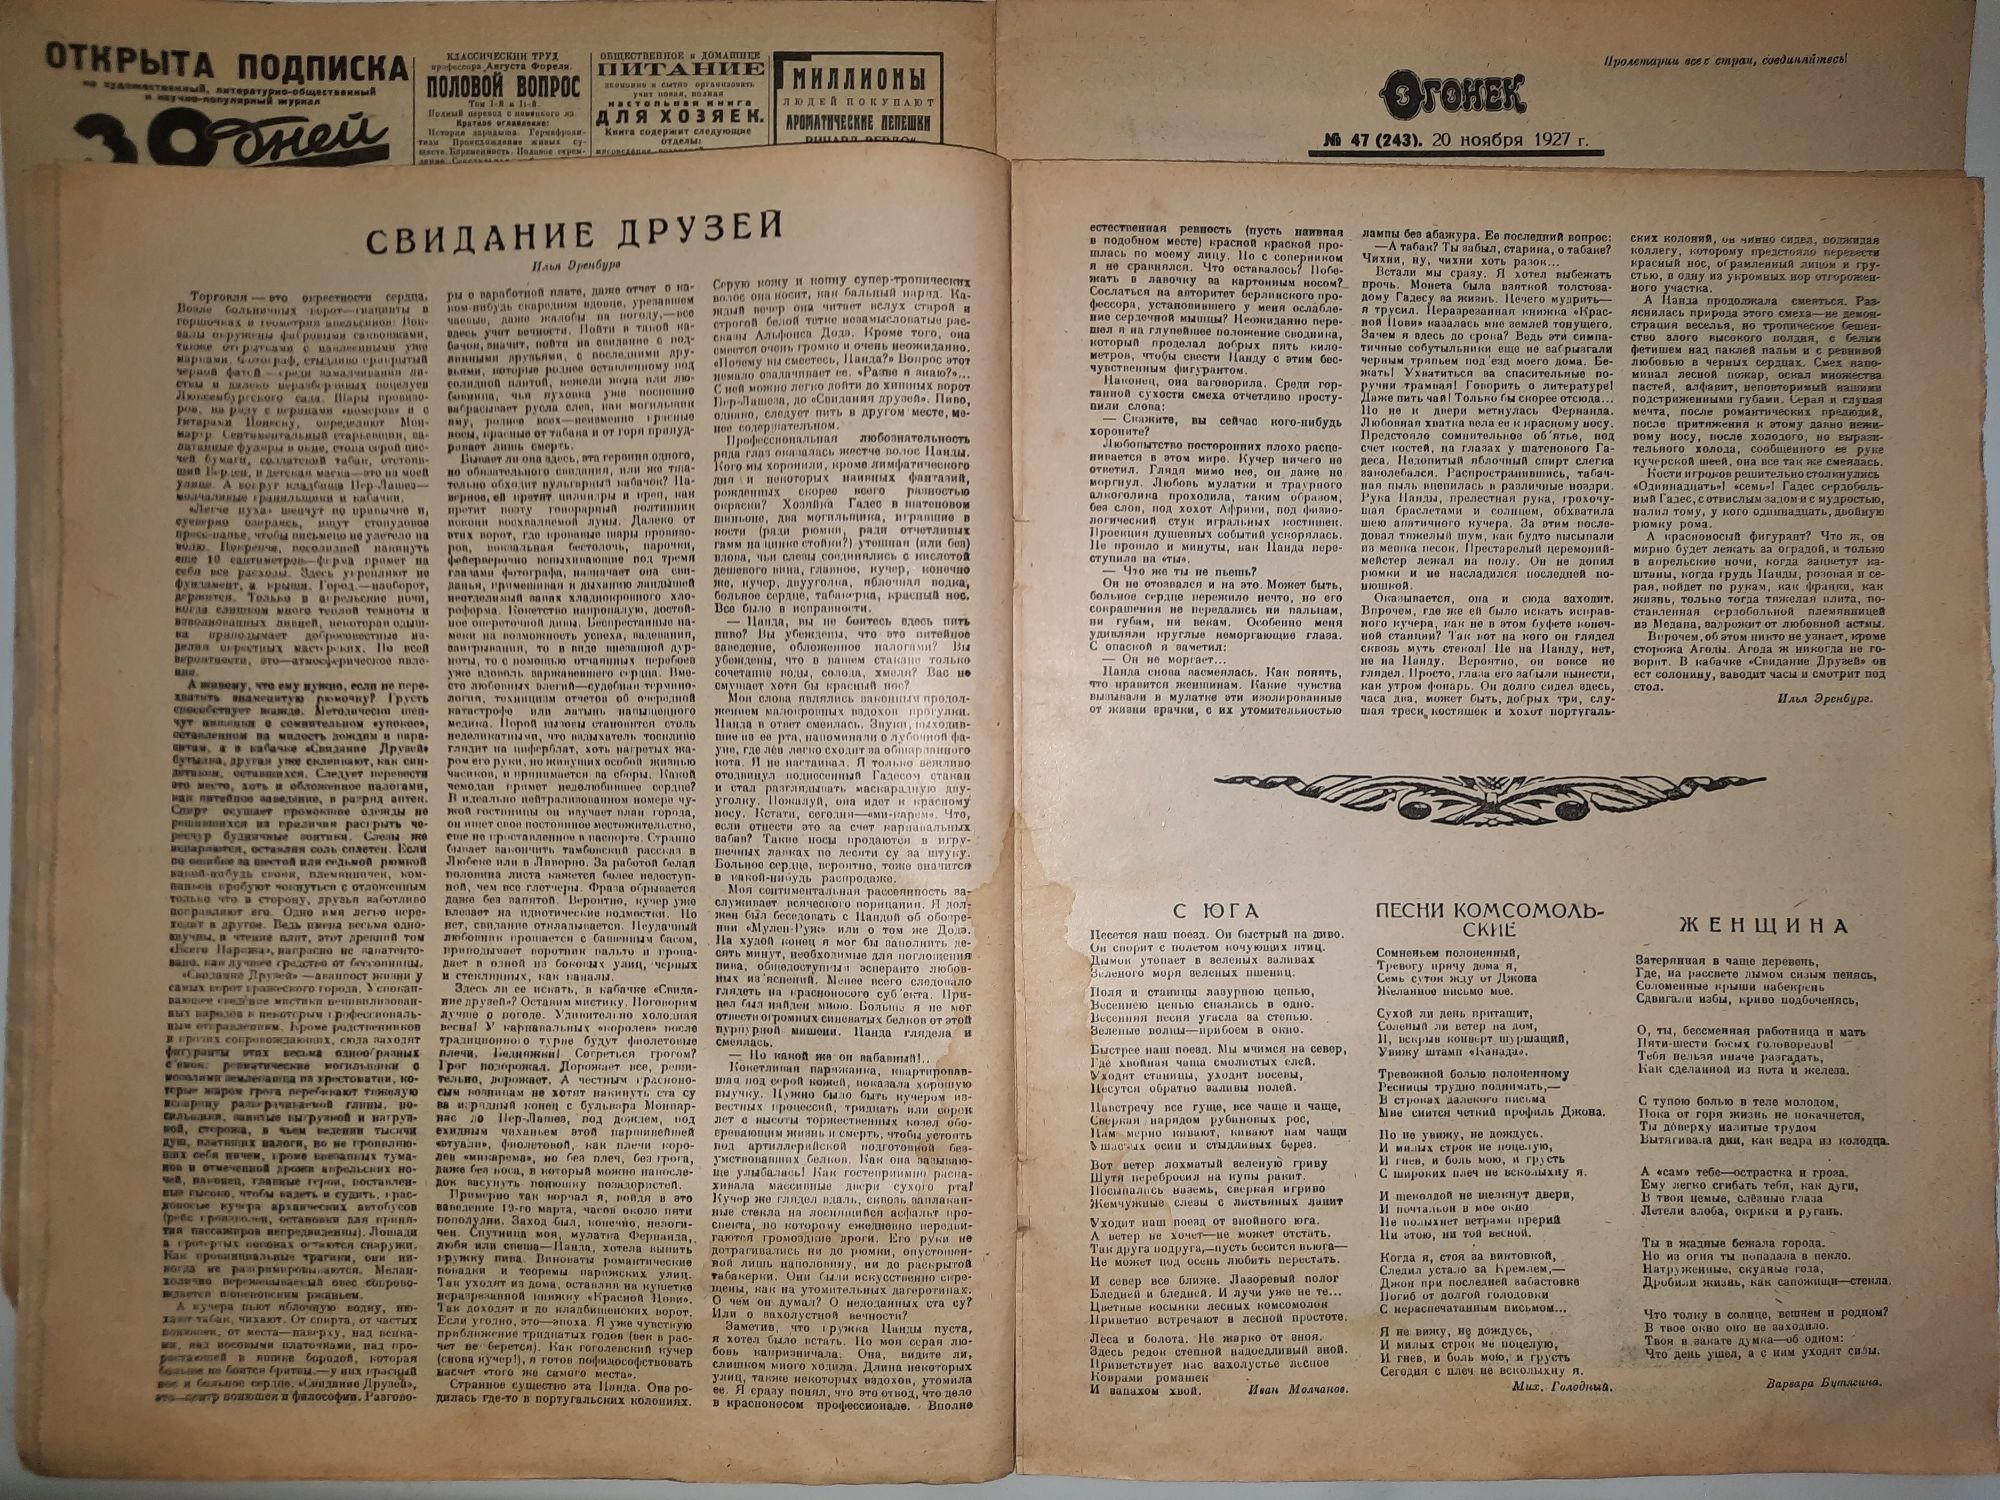 Журнал огонек 07.1926 и 11. 1927год ссср